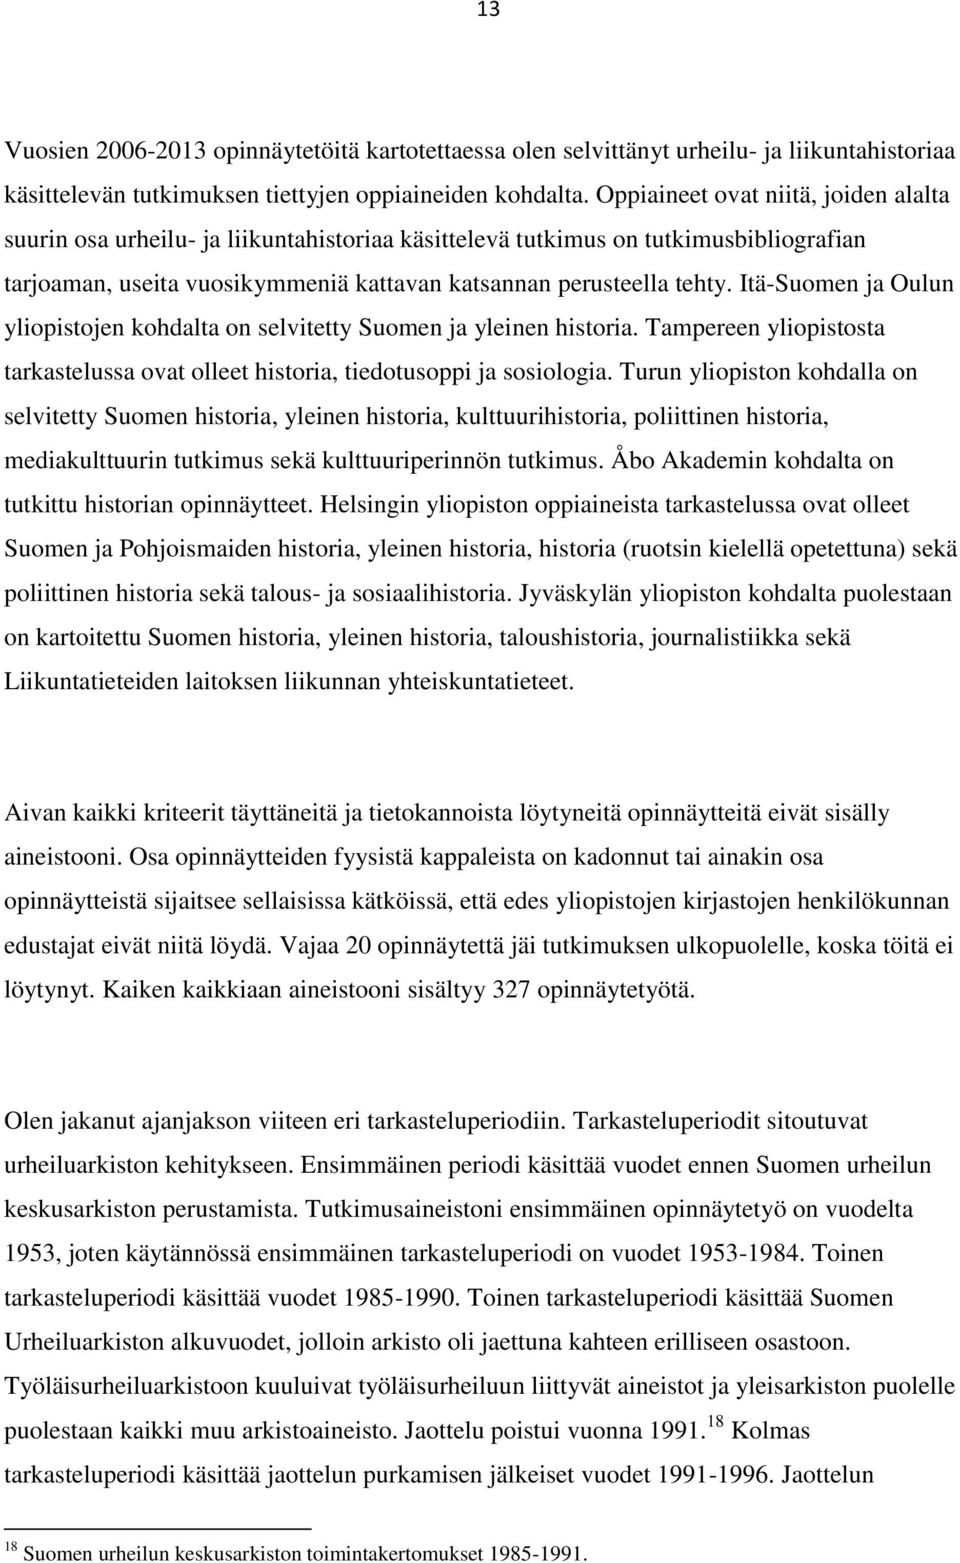 Itä-Suomen ja Oulun yliopistojen kohdalta on selvitetty Suomen ja yleinen historia. Tampereen yliopistosta tarkastelussa ovat olleet historia, tiedotusoppi ja sosiologia.